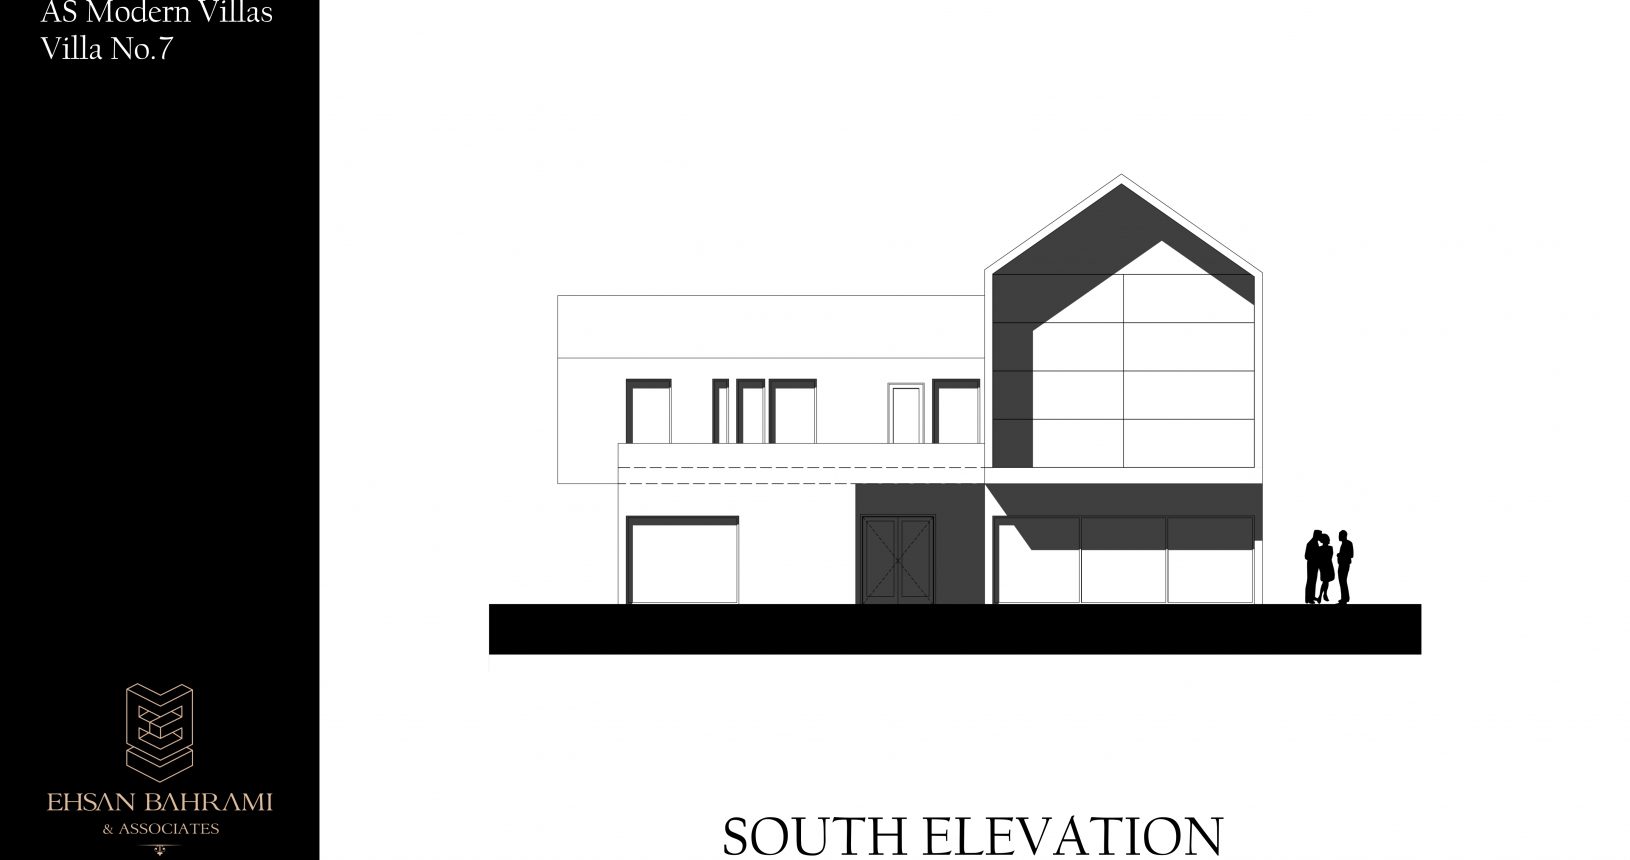 As Villa No.7 South Elevation